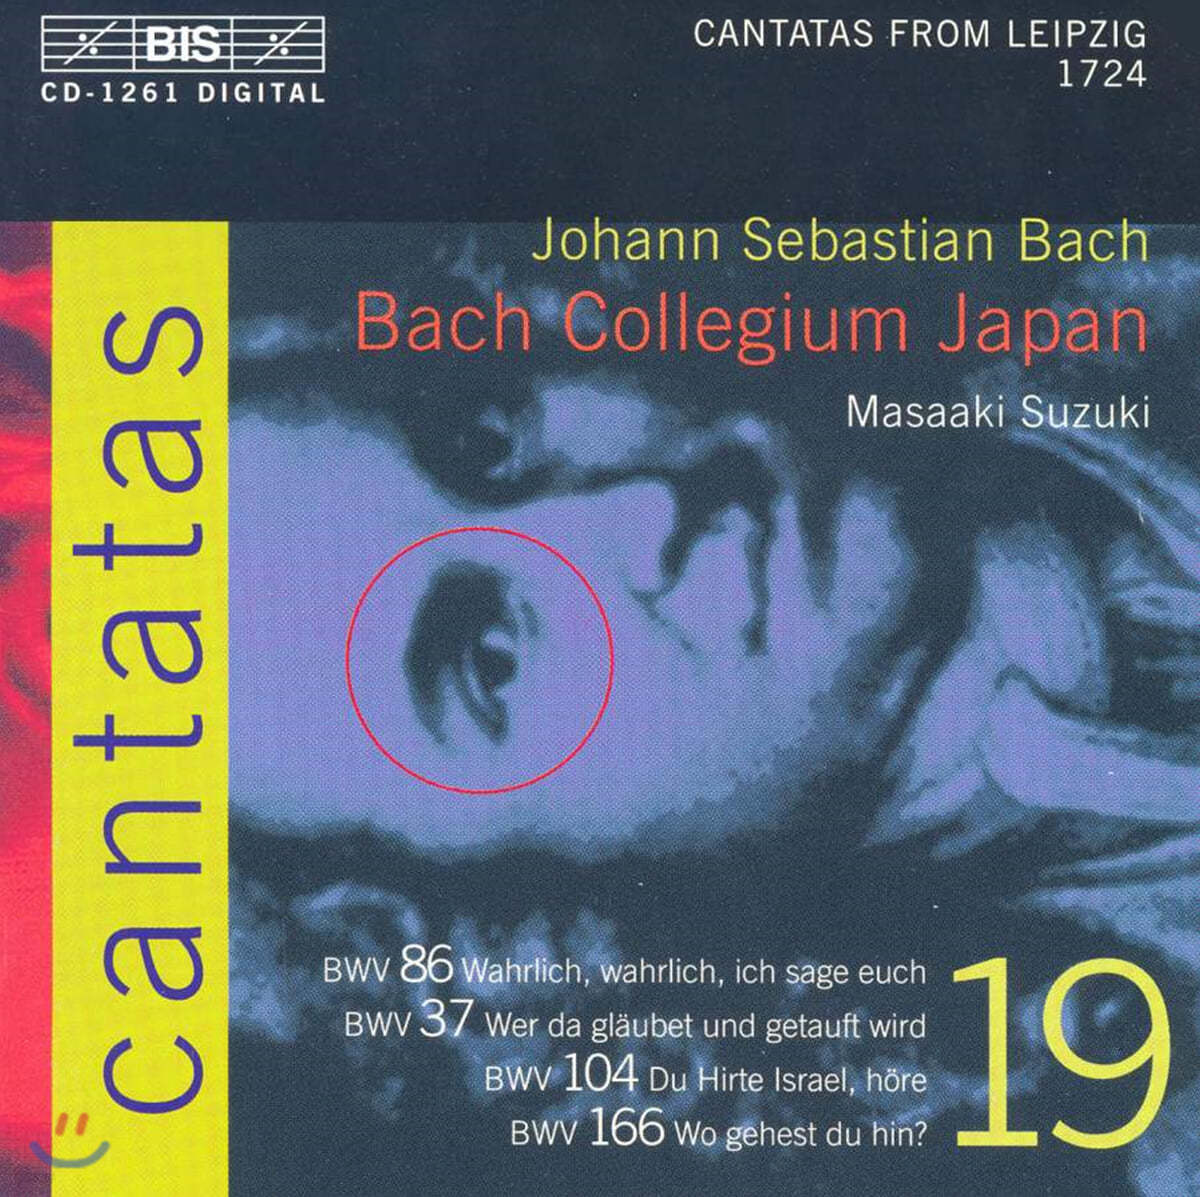 Masaaki Suzuki 바흐: 칸타타 19권 (Bach: Cantatas Vol. 19)